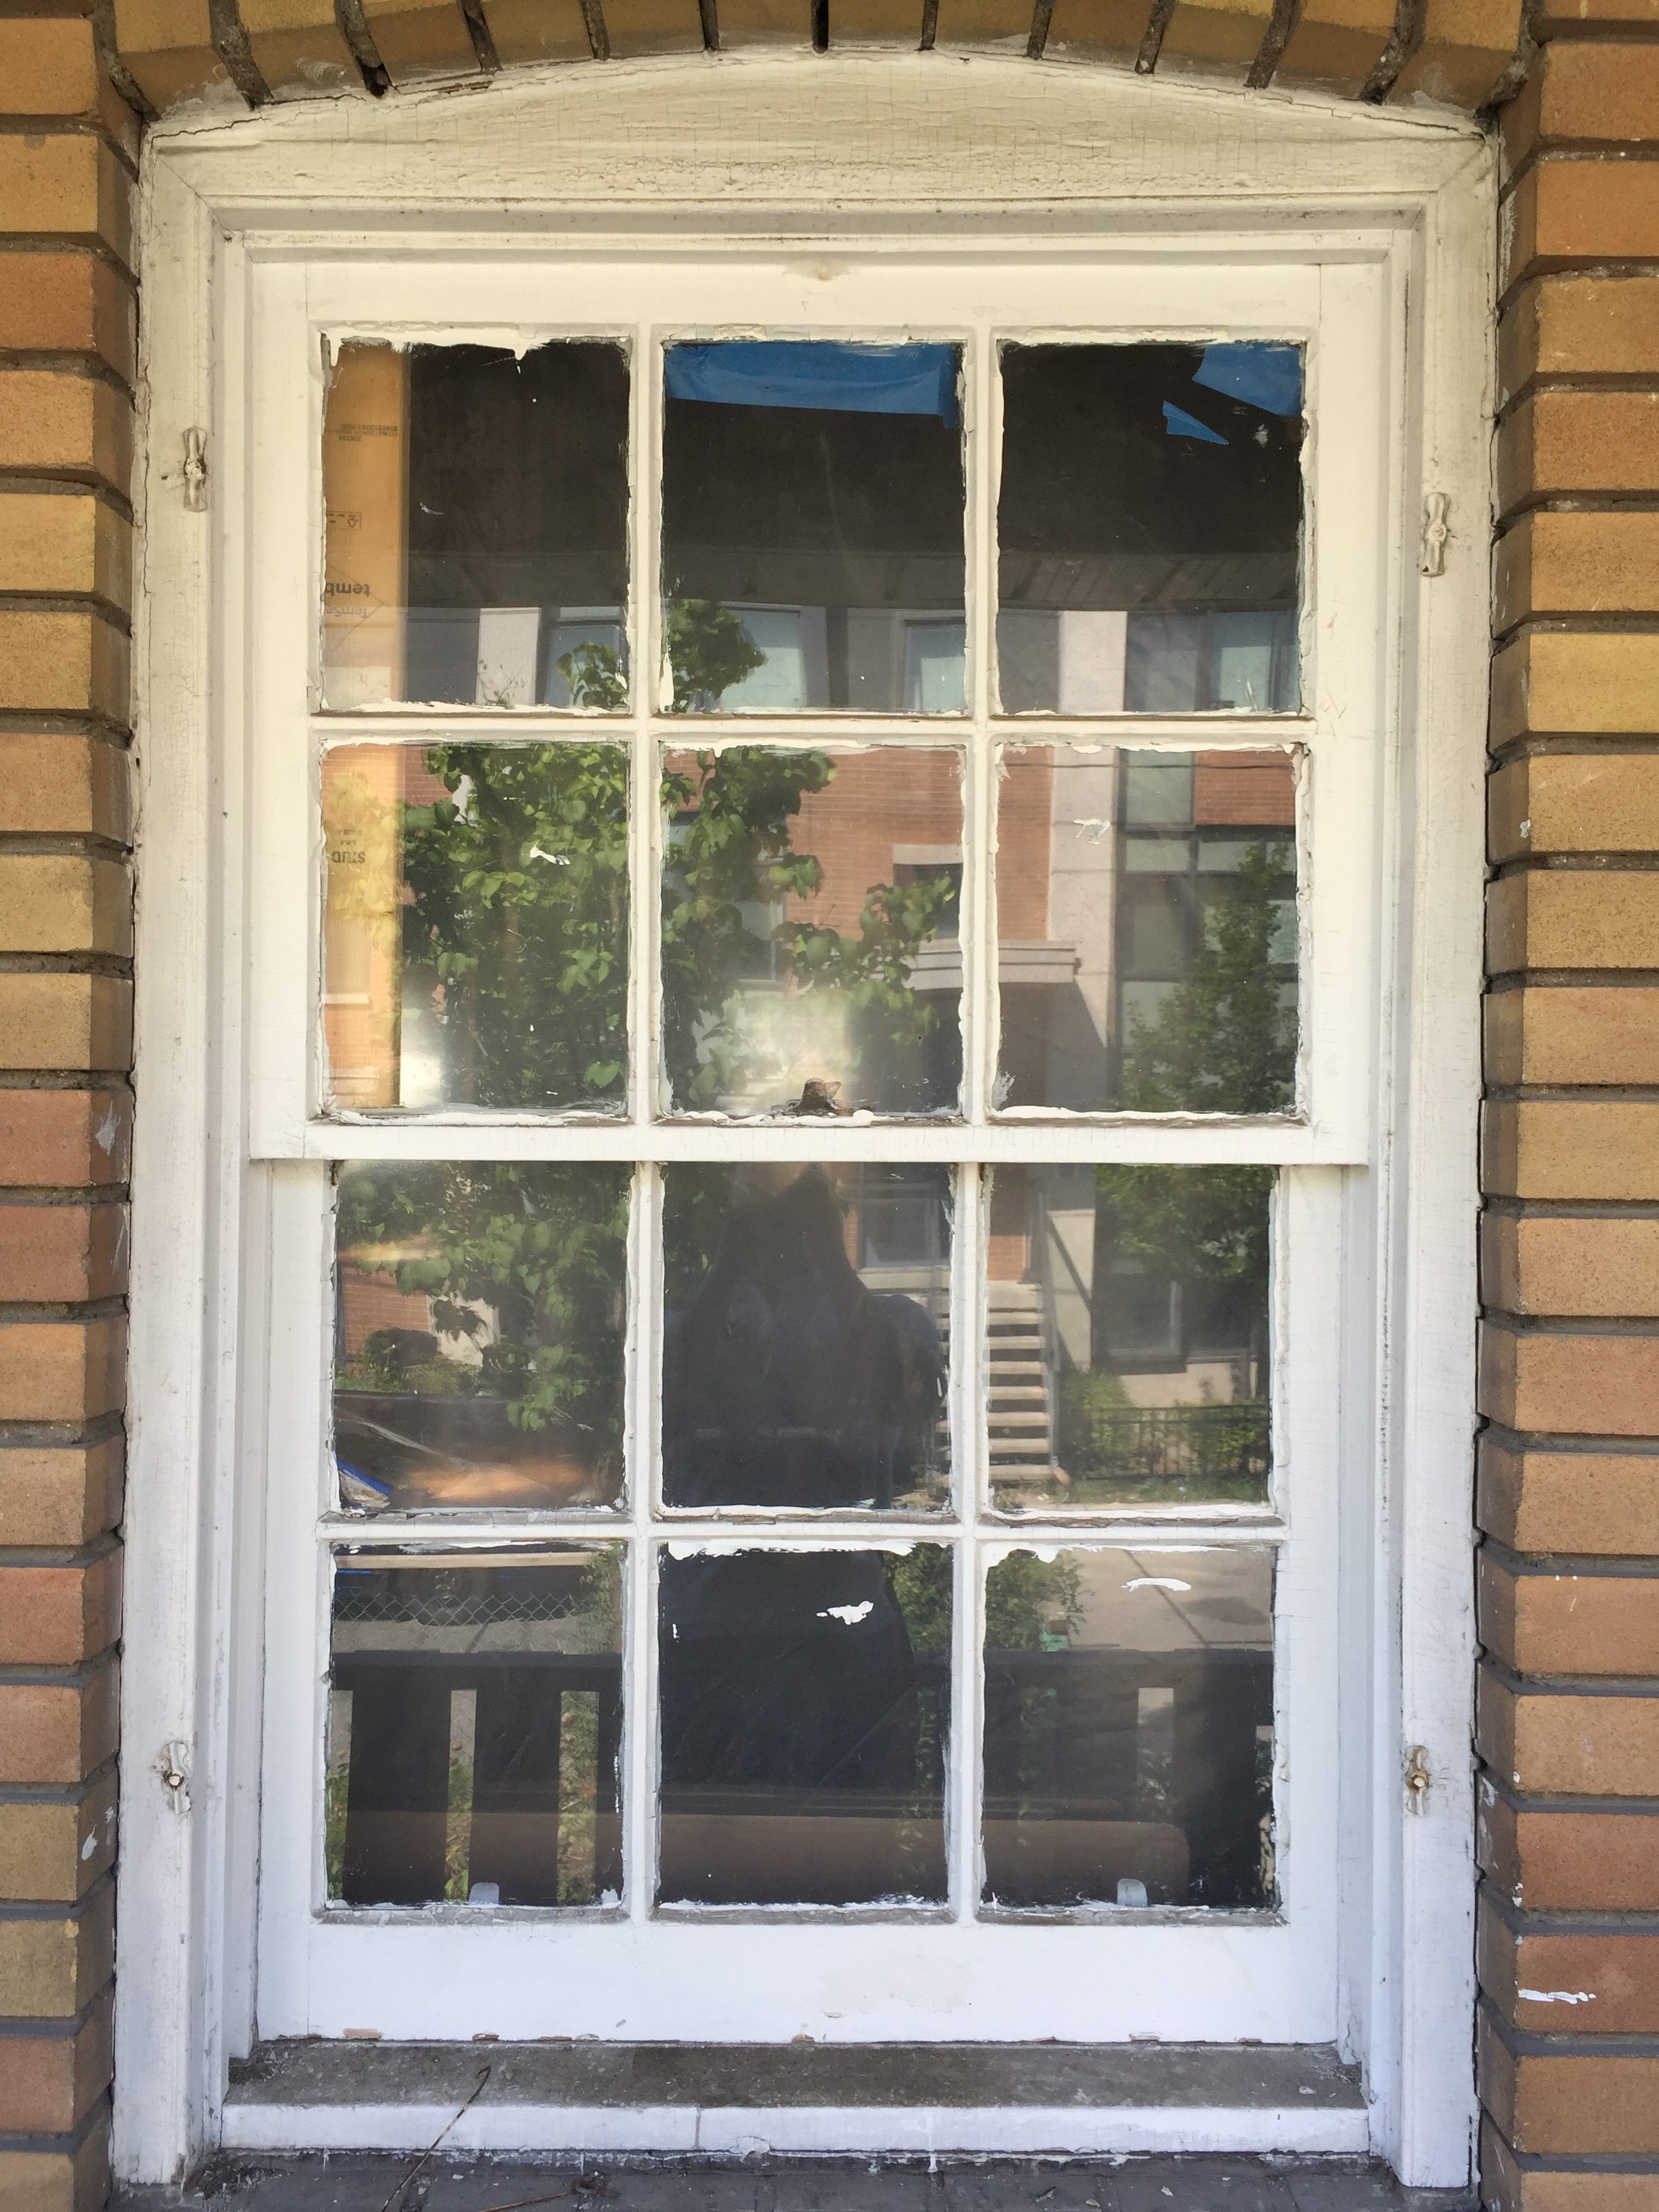 Original windows throughout